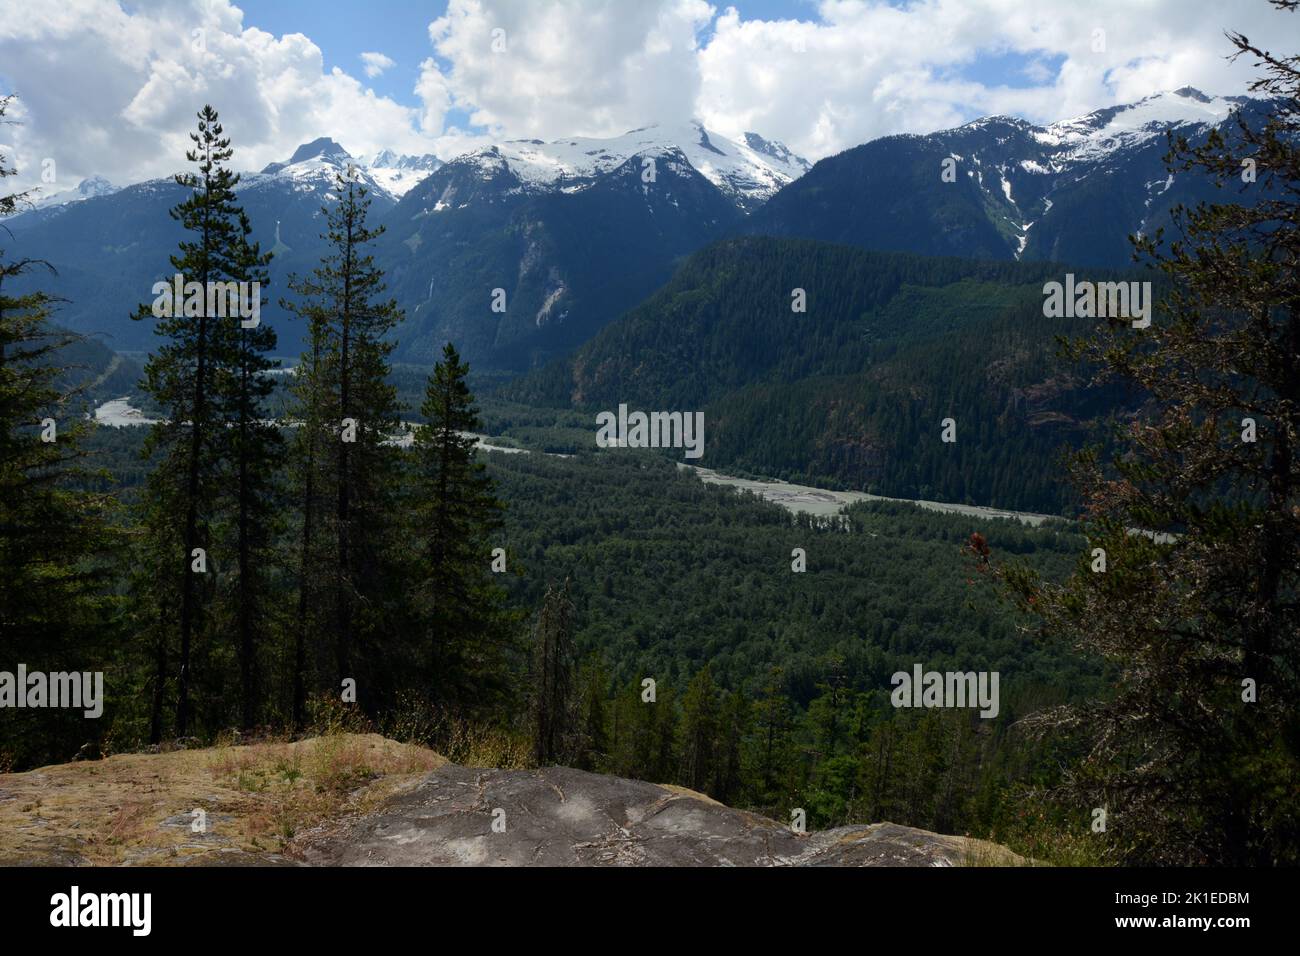 La rivière et la vallée du Squamish supérieur traversant la chaîne Tantalus des montagnes côtières de la Colombie-Britannique, Canada. Banque D'Images